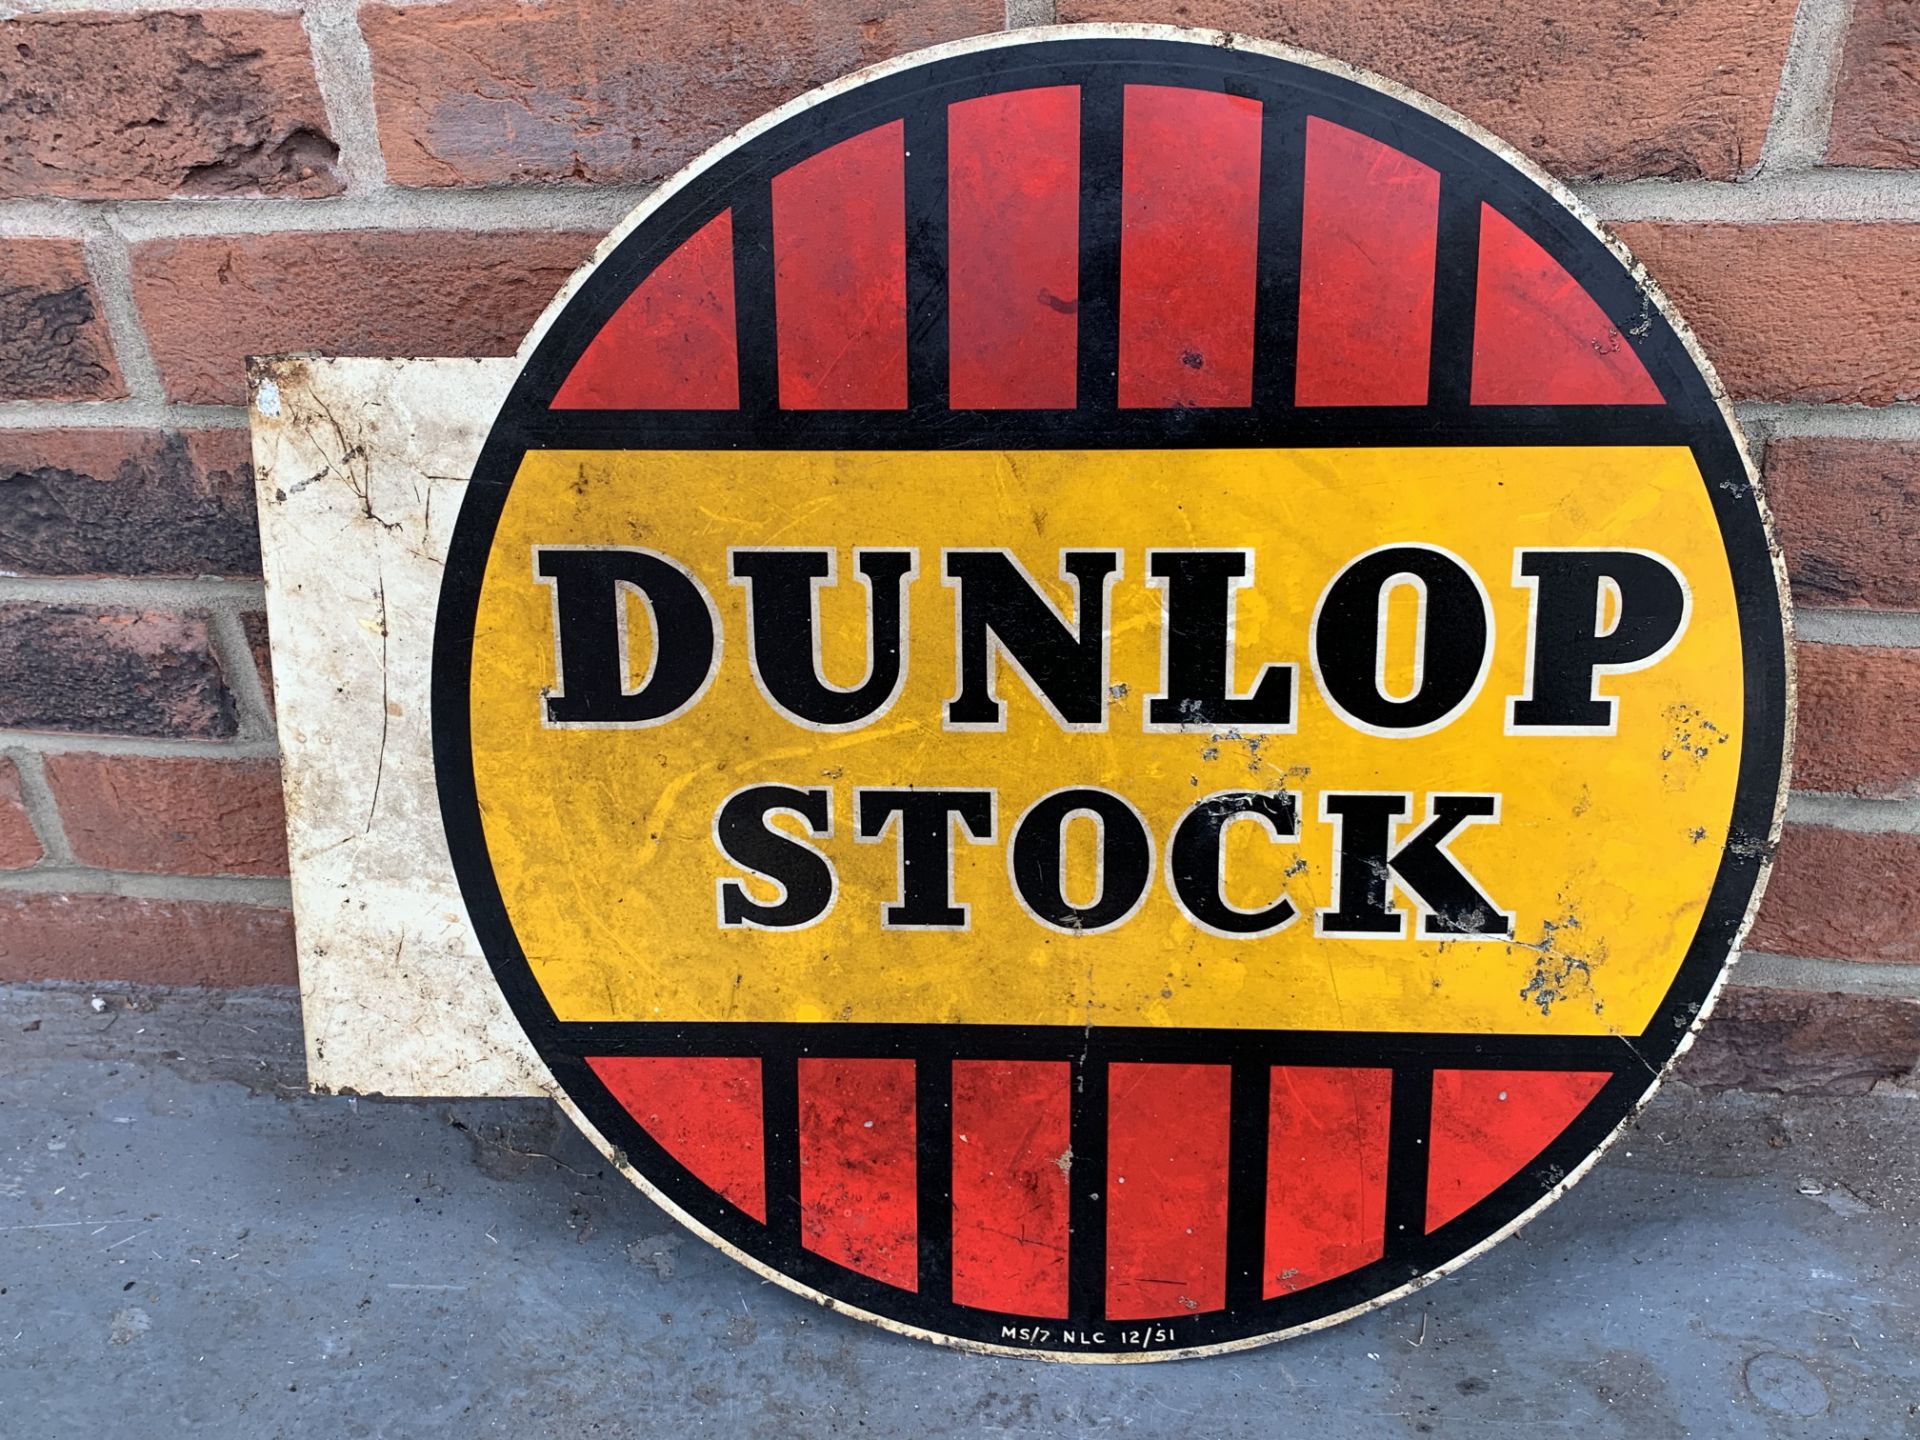 Original Dunlop Stock Metal Flanged Circular Sign - Image 2 of 2